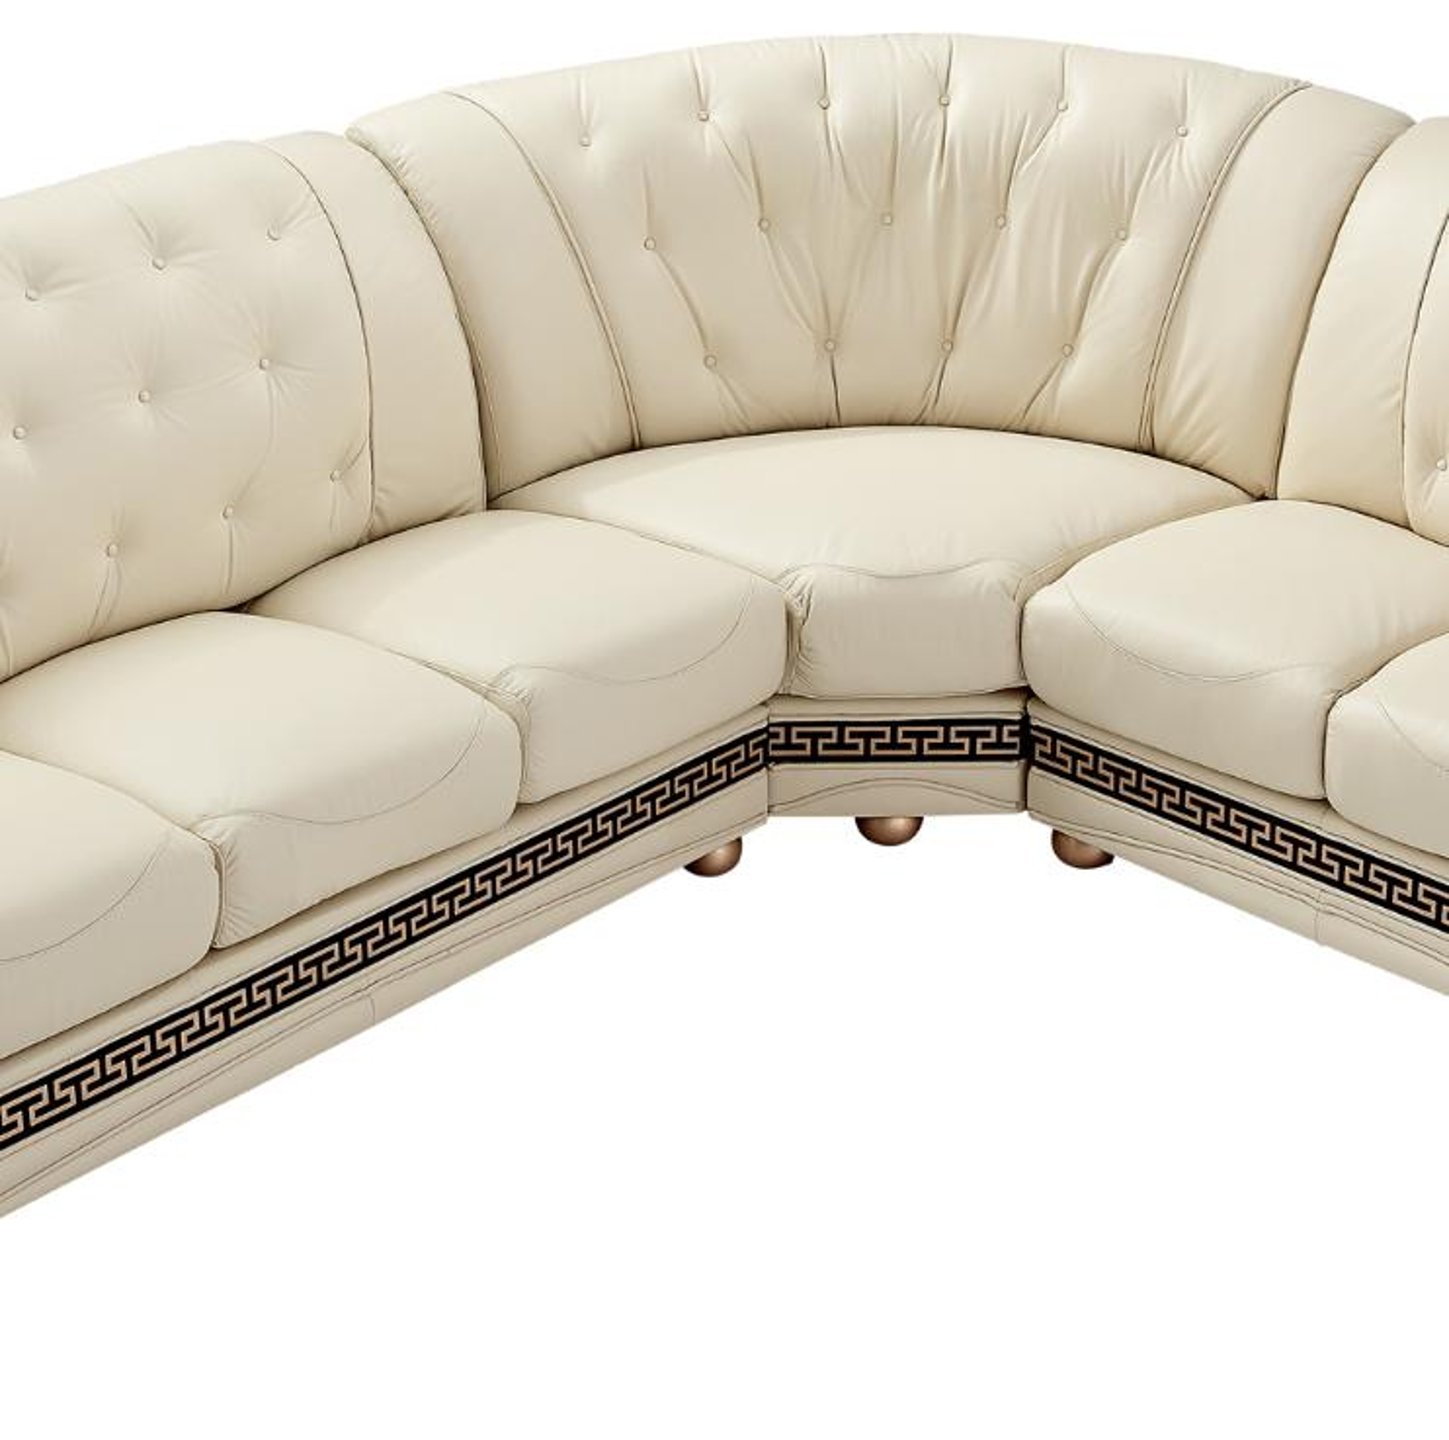 мягкий турецкий диван без спинки 9